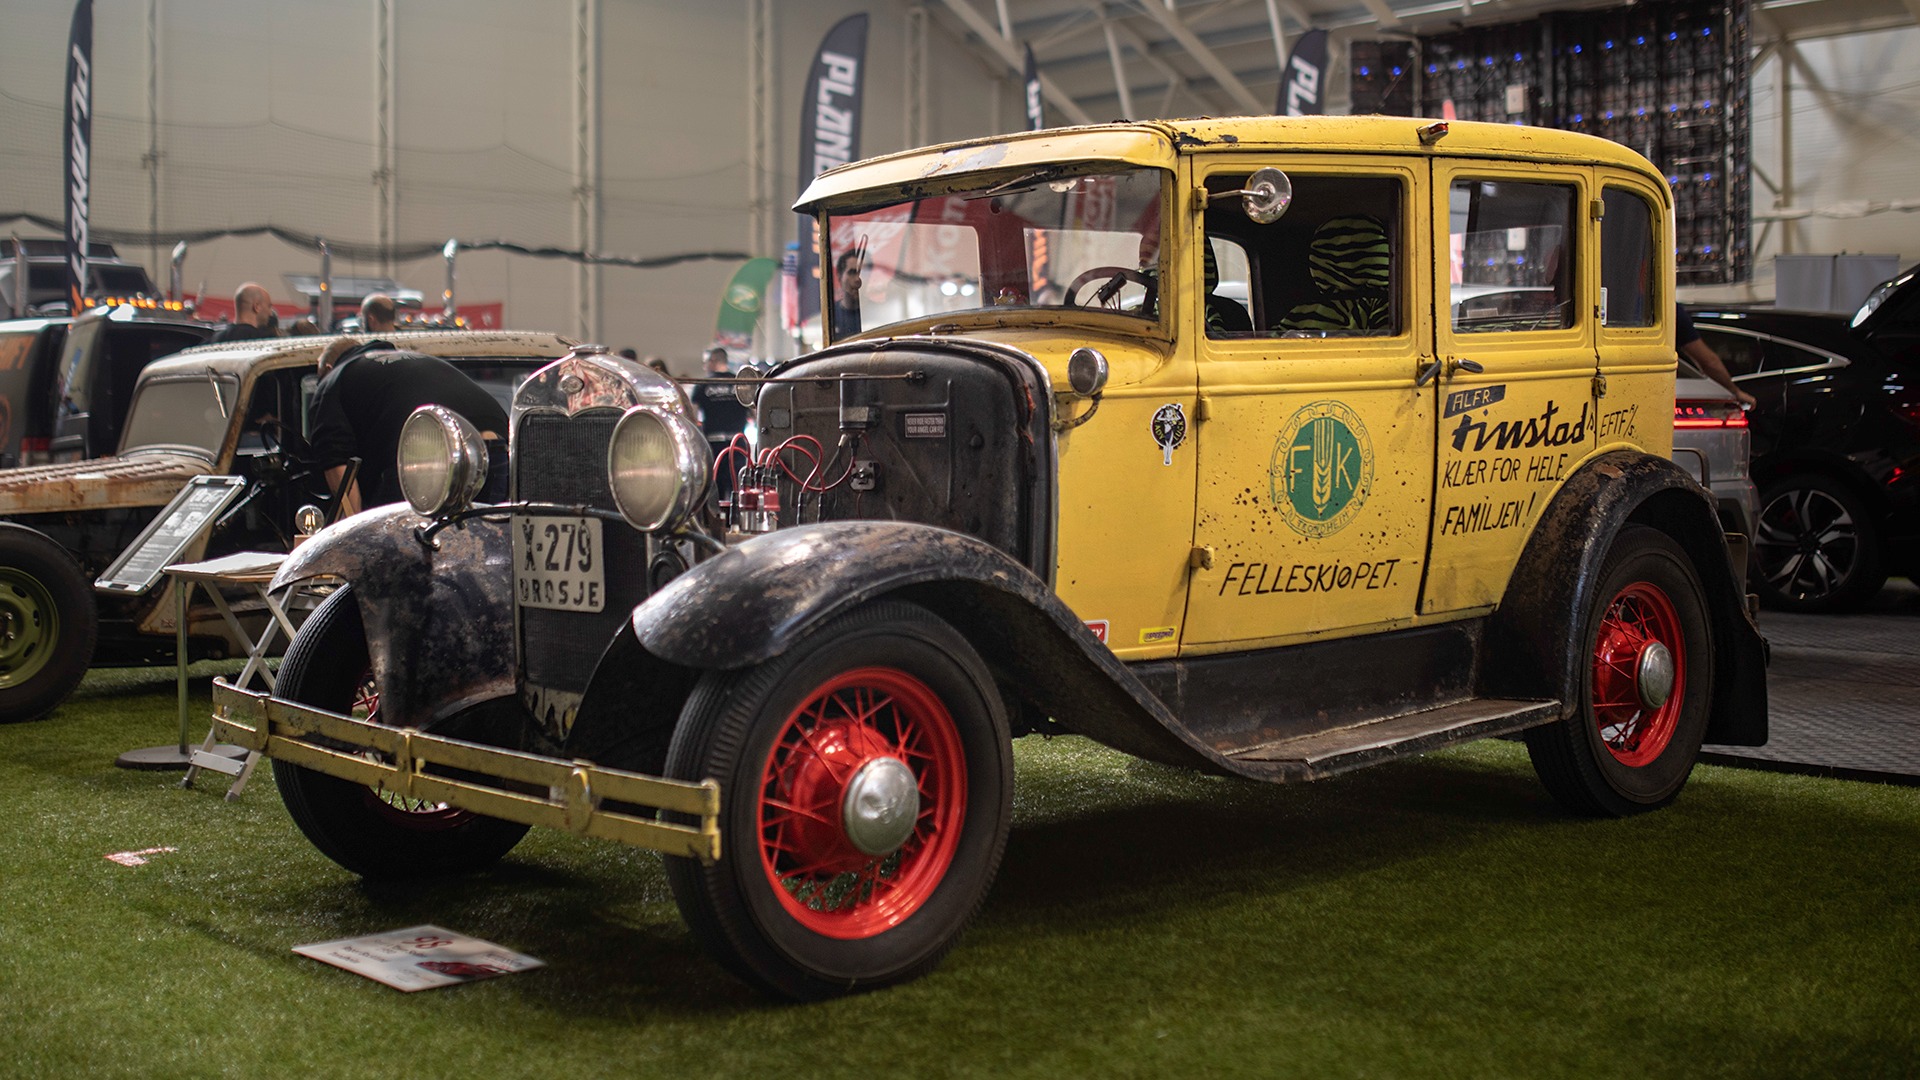 1930 A-Ford som gikk sine først 9 år som drosje i Harstad, før den endte opp i Steinkjer som russebil i 1964. Siden den gang er bilen kun oppgradert teknisk, og ser omtrent lik ut som den gjorde for 60 år siden.